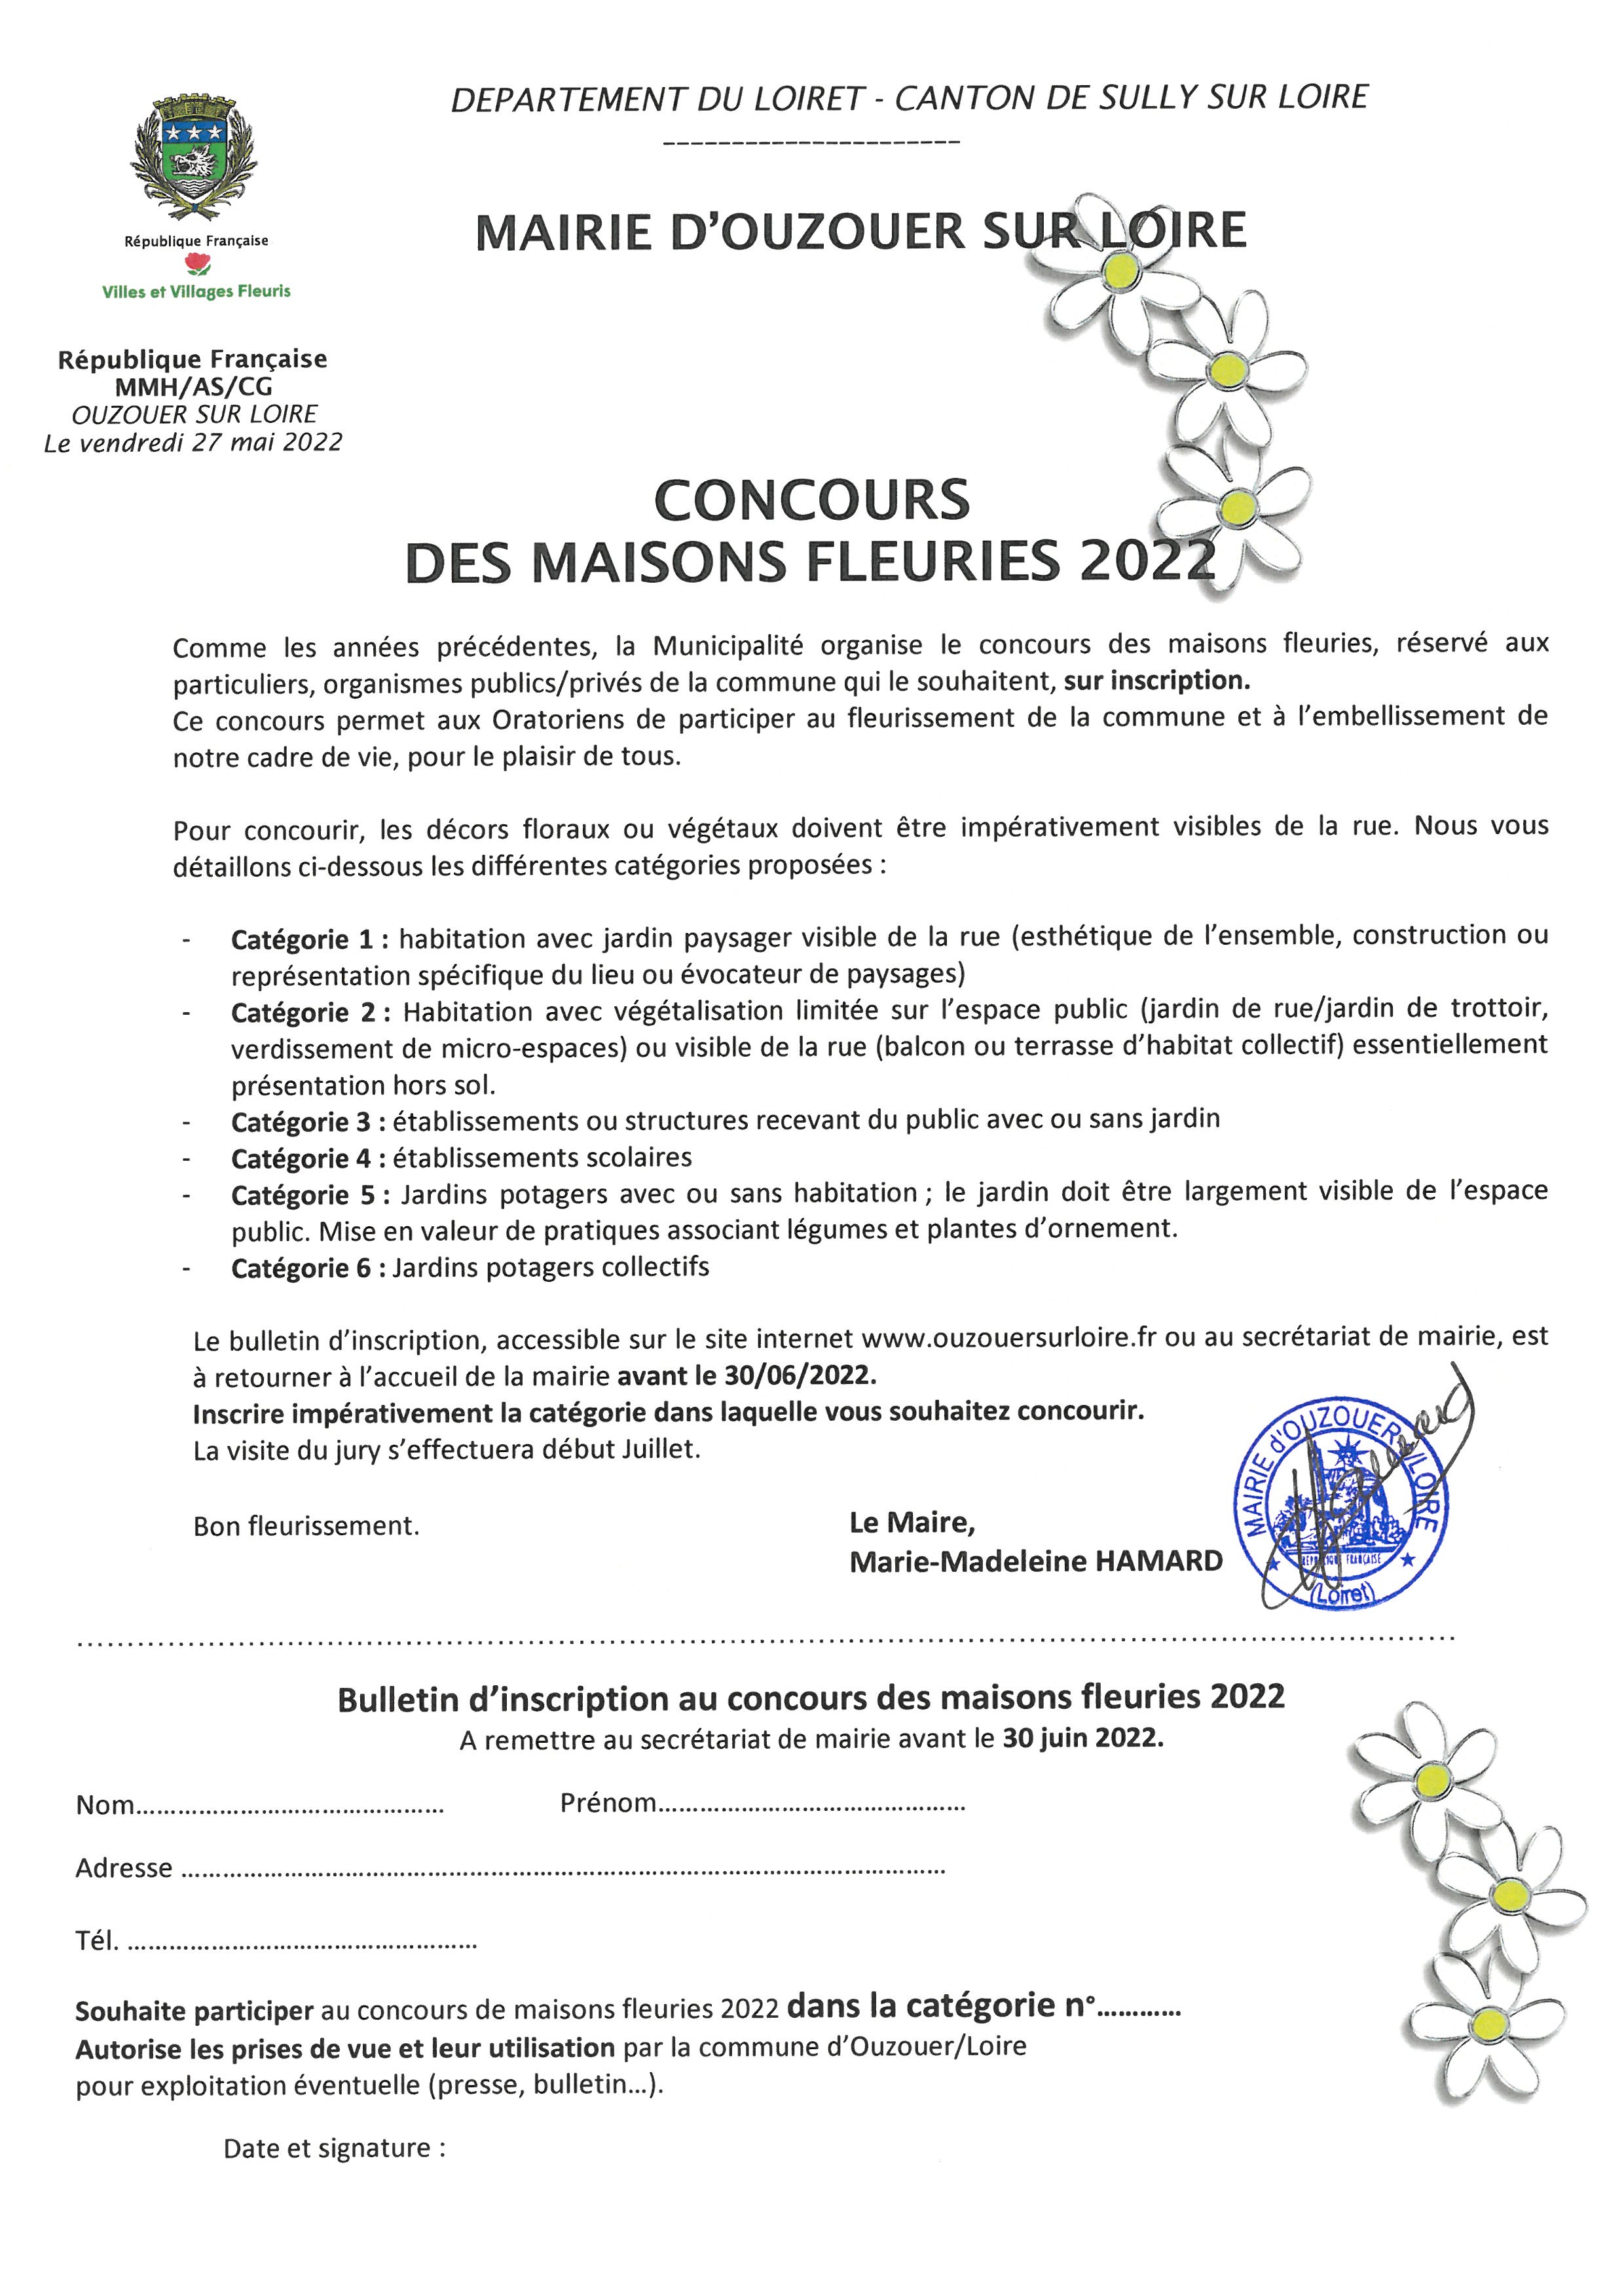 CONCOURS DES MAISONS FLEURIES 2022